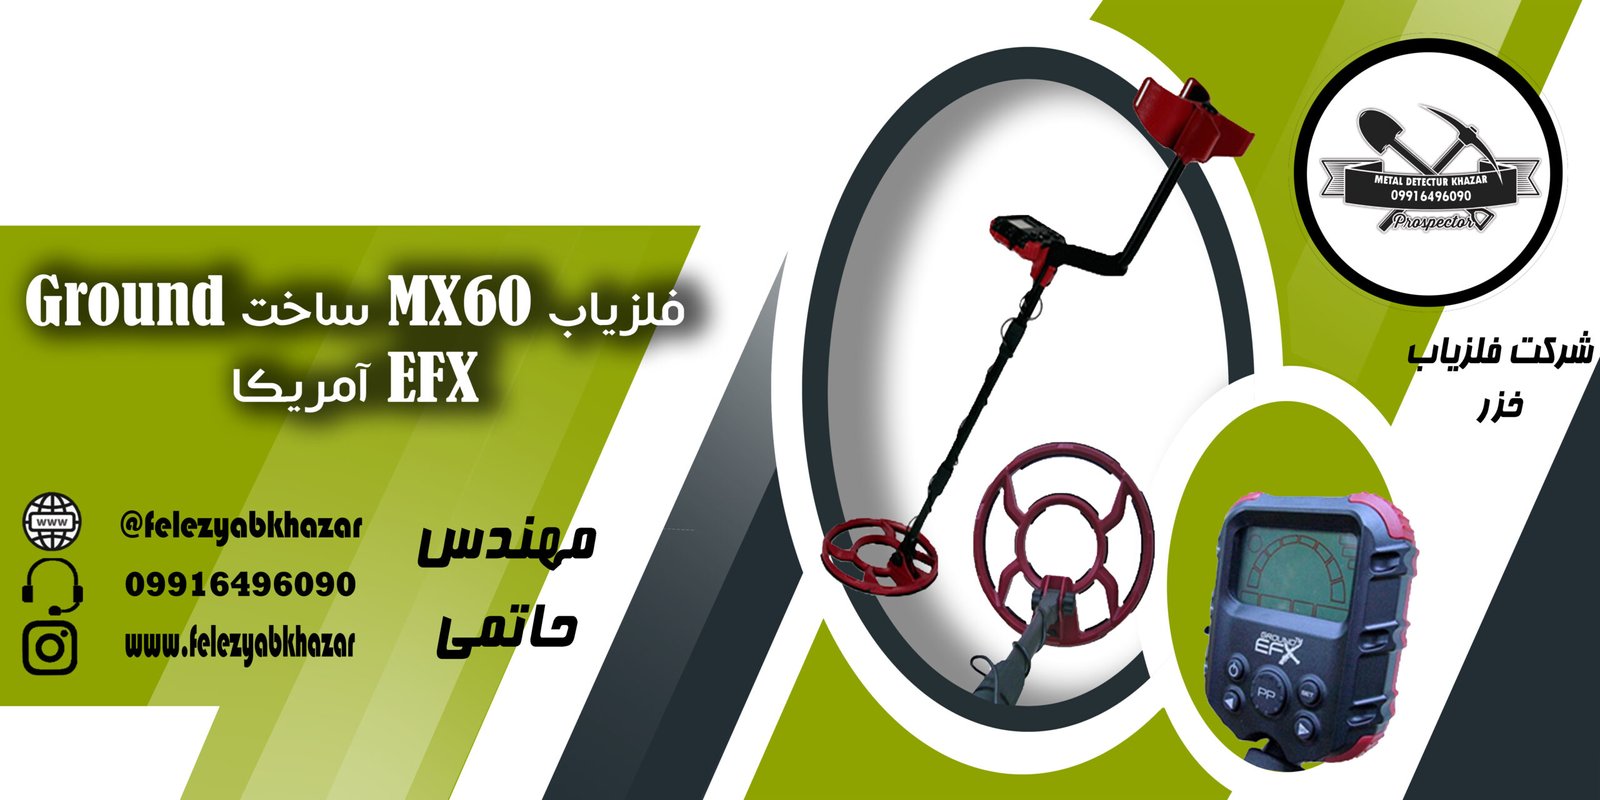 فلزیاب MX60 ساخت Ground EFX آمریکا